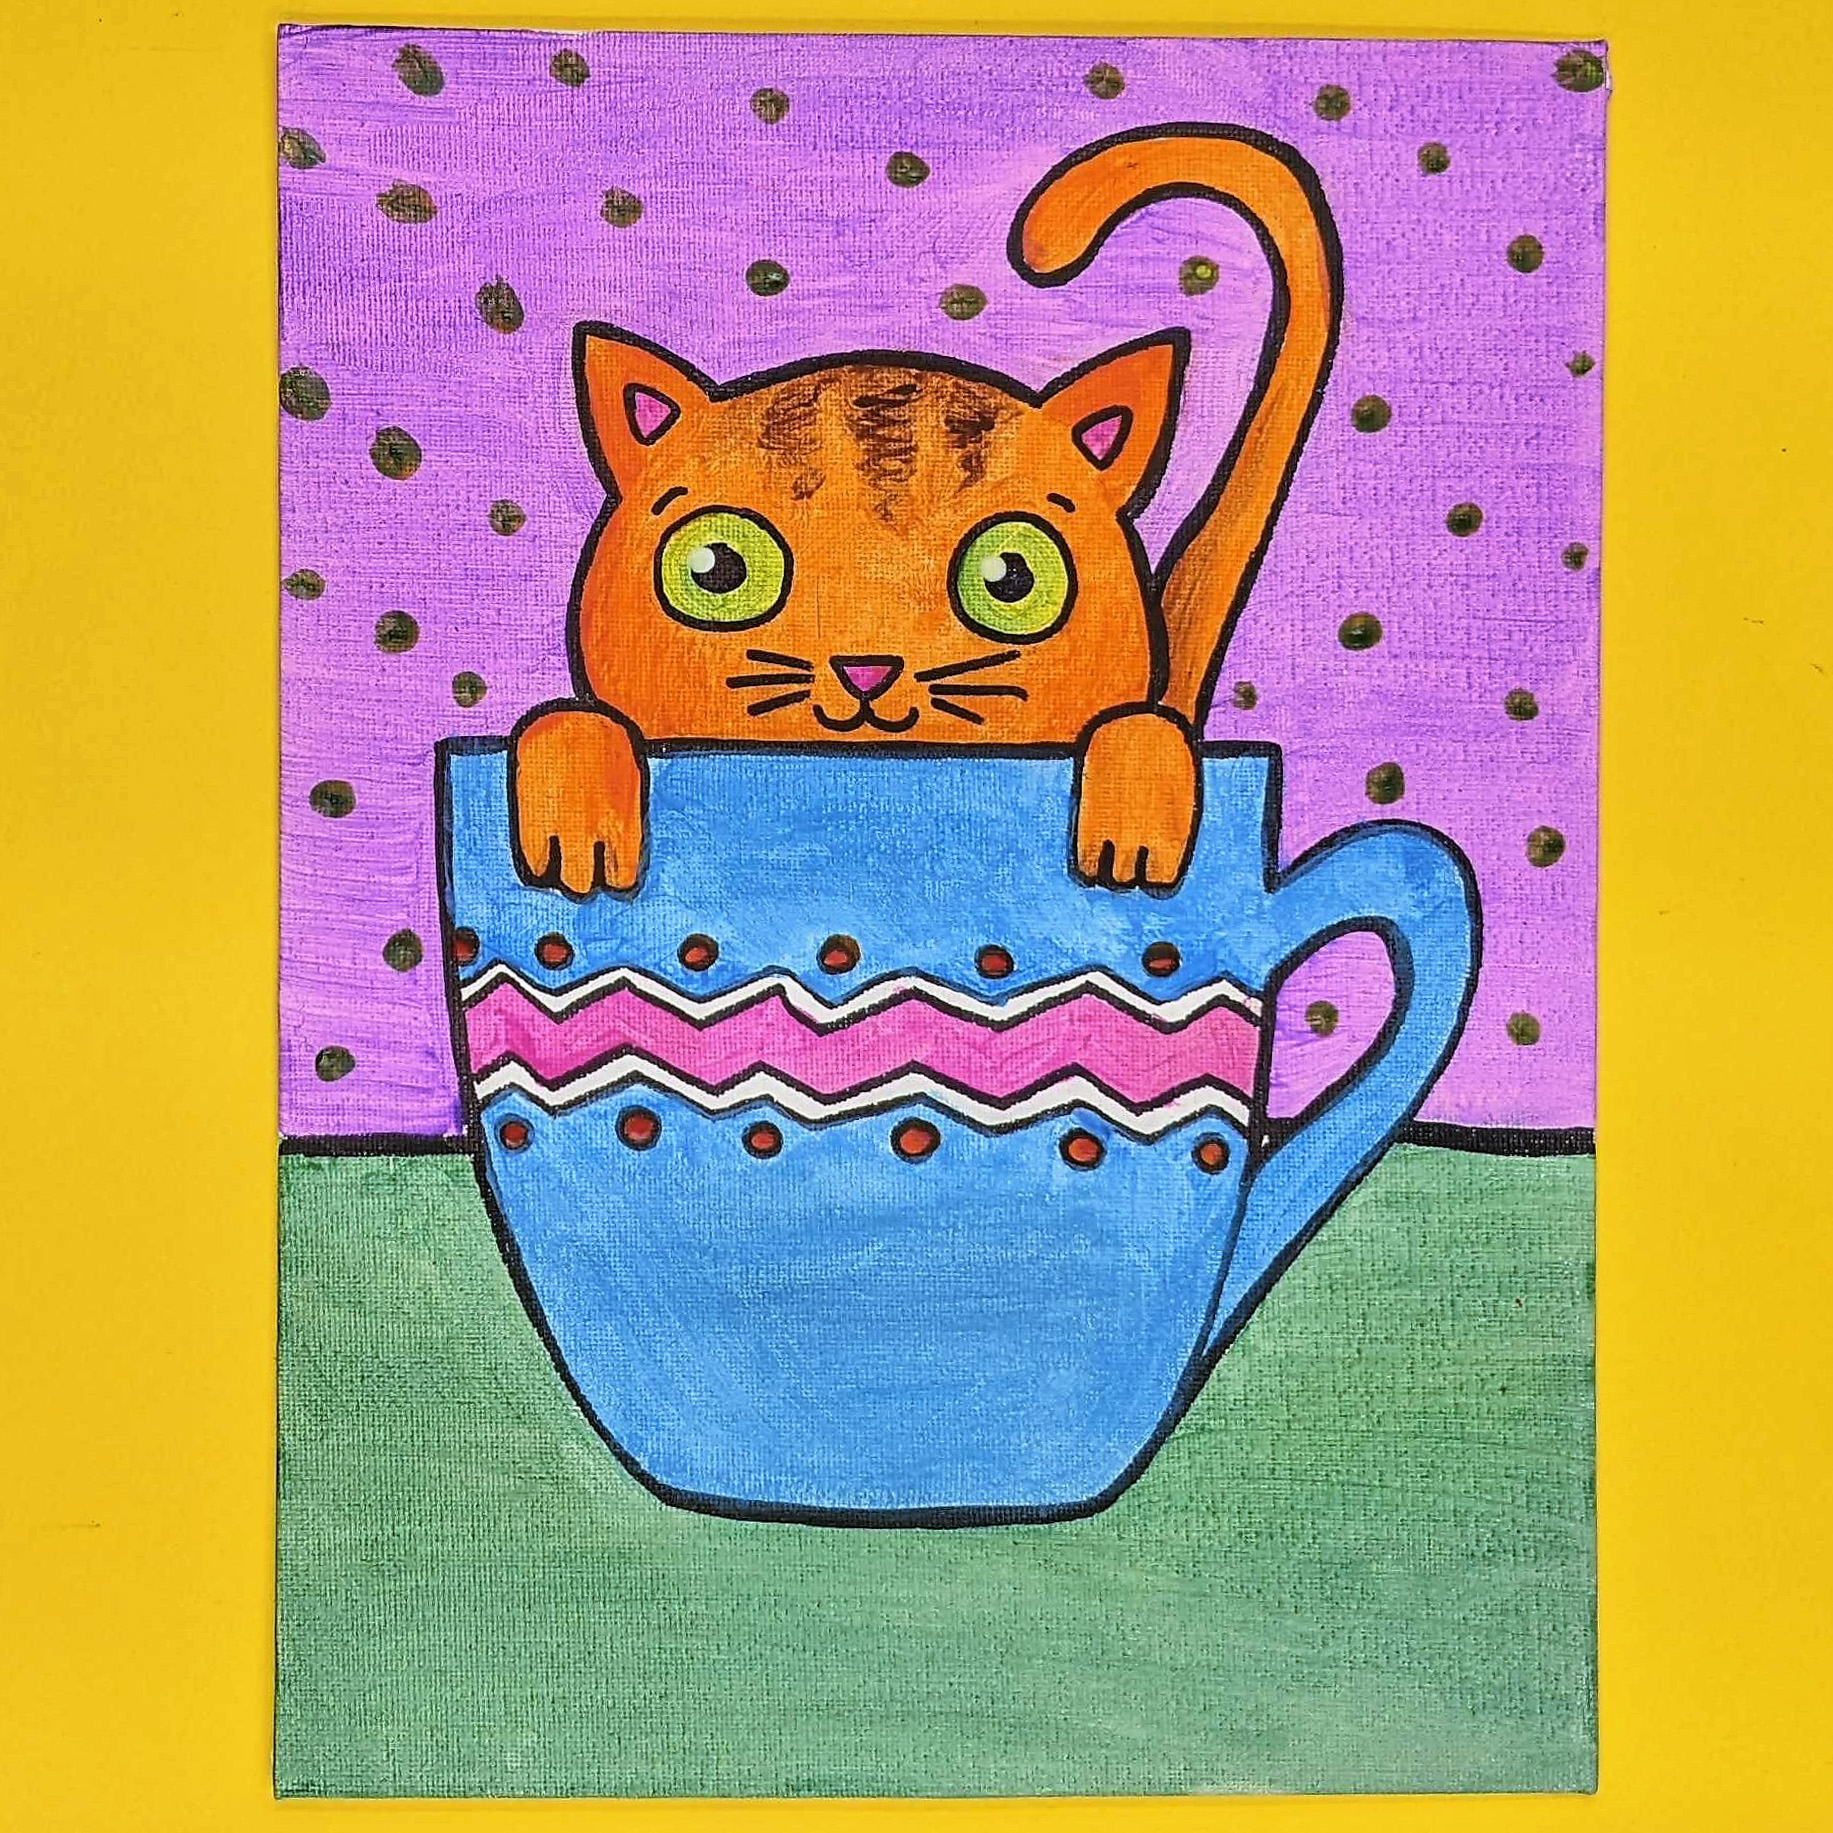 Kidcreate Studio - Alexandria, Teacup Kitten Art Project